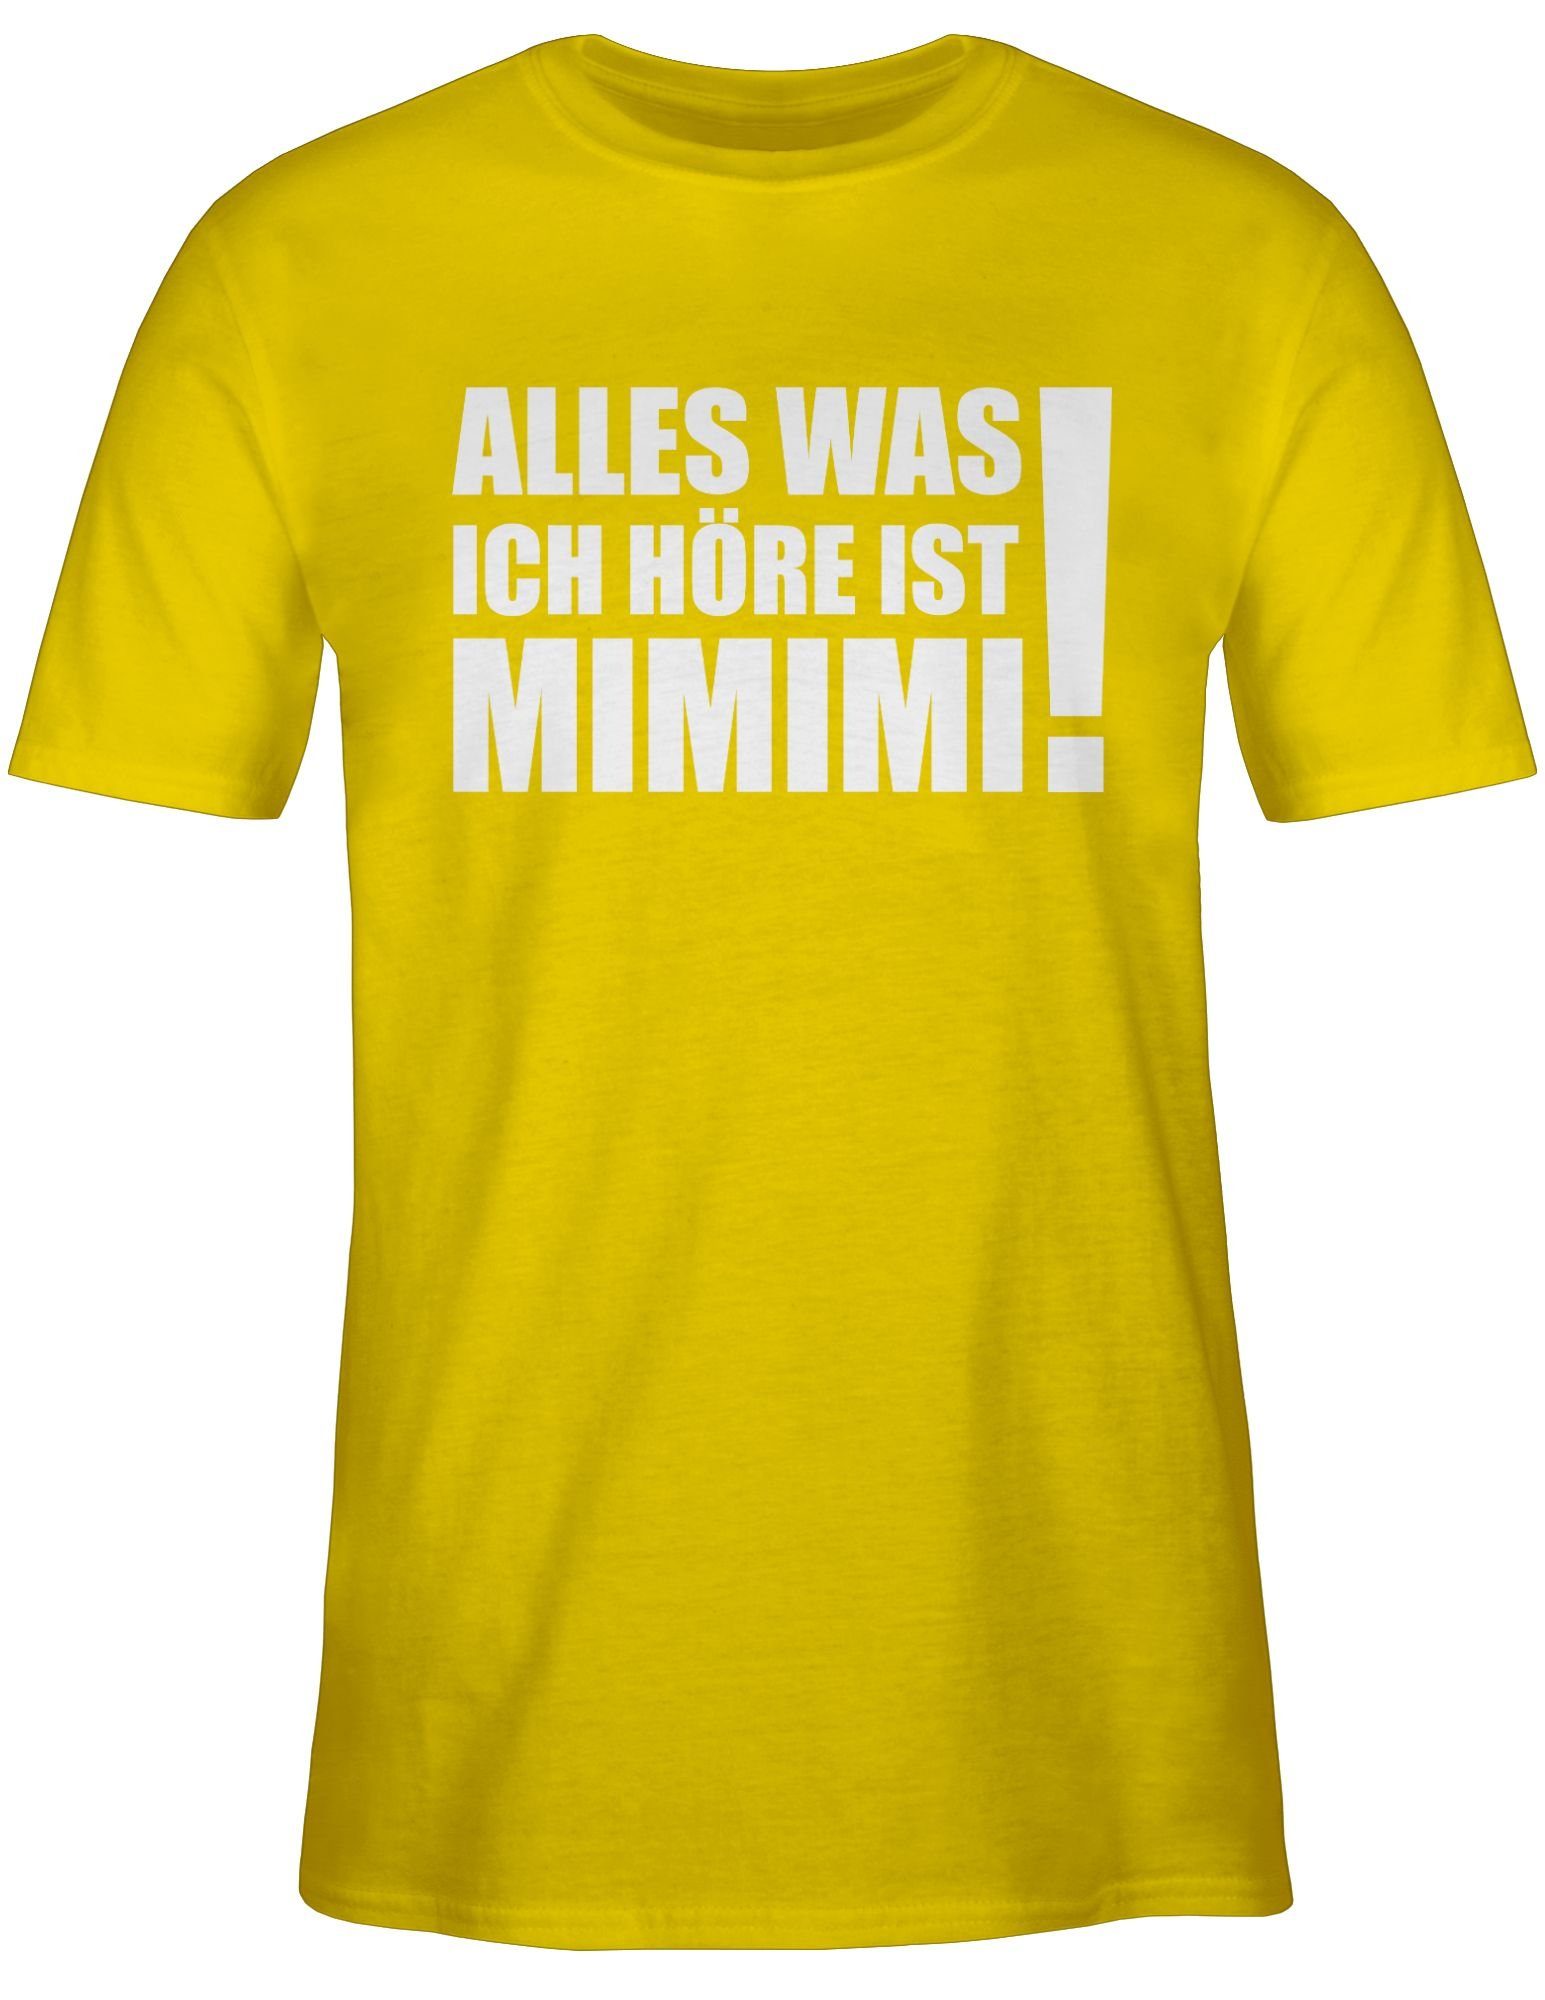 T-Shirt Alles ist Shirtracer MIMIMI! mit höre - was 3 Statement ich weiß Gelb Spruch Sprüche